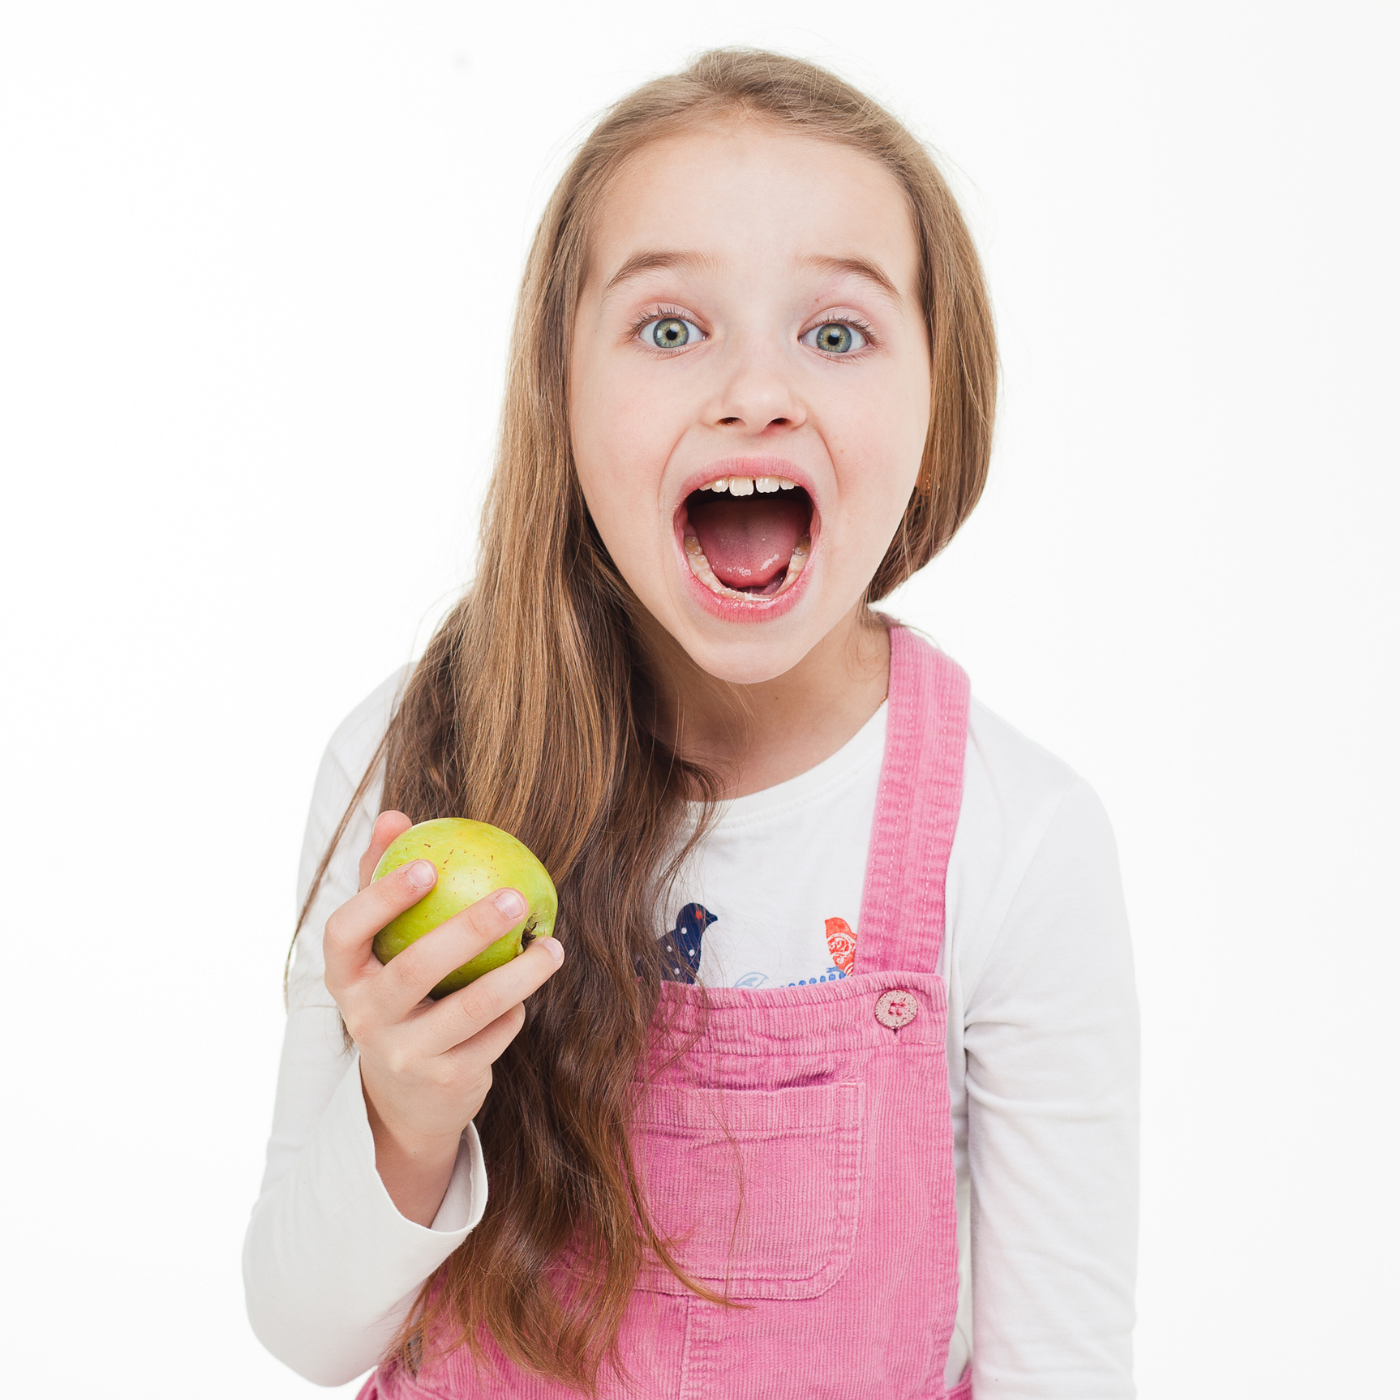 Cладкое детство: как есть сладкое, чтобы зубы оставались здоровыми